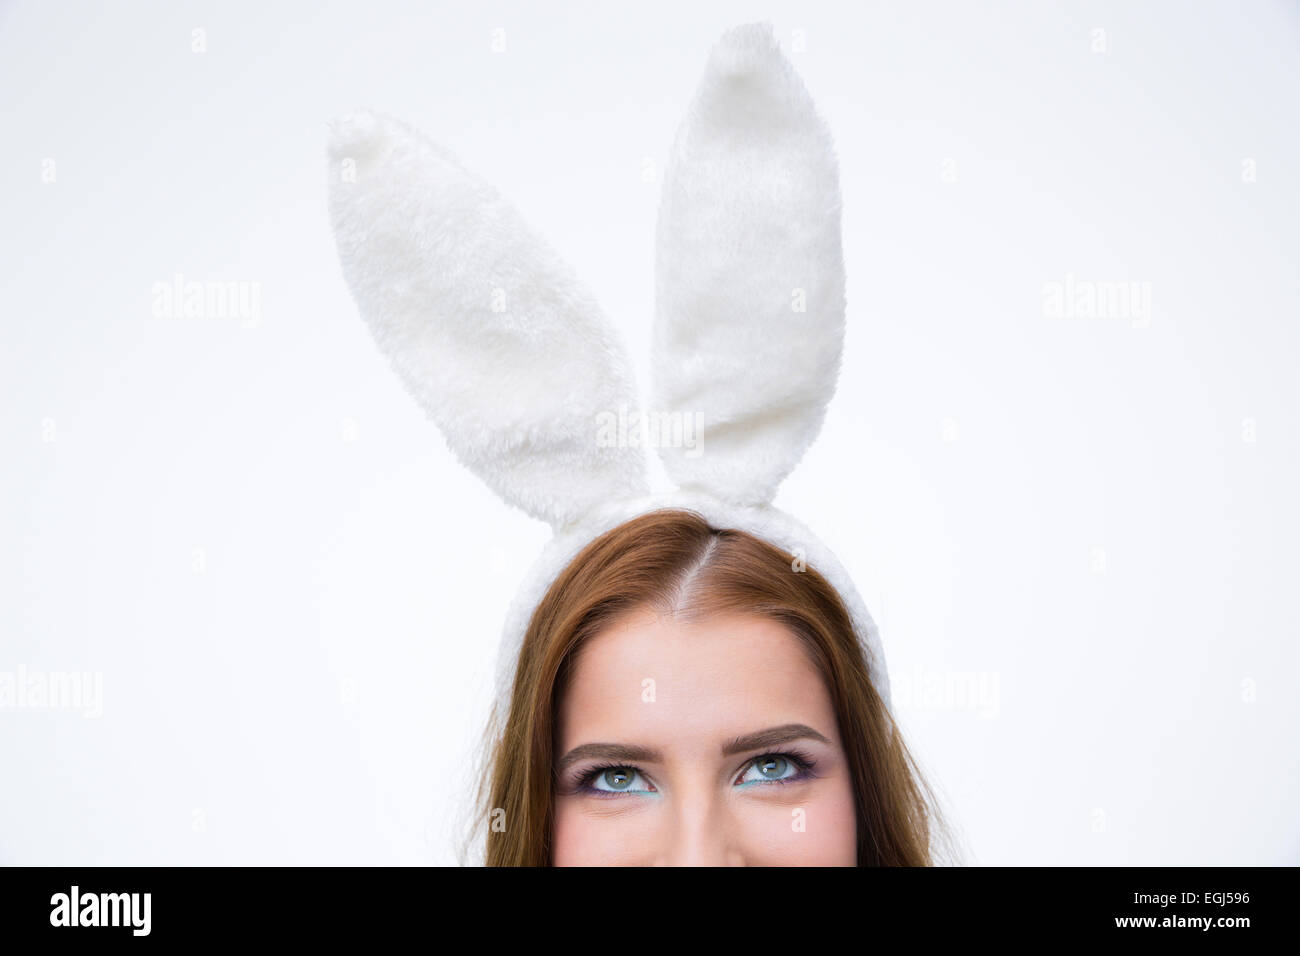 Imagen recortada de una mujer en orejas de conejo mirando hacia arriba sobre fondo gris Foto de stock